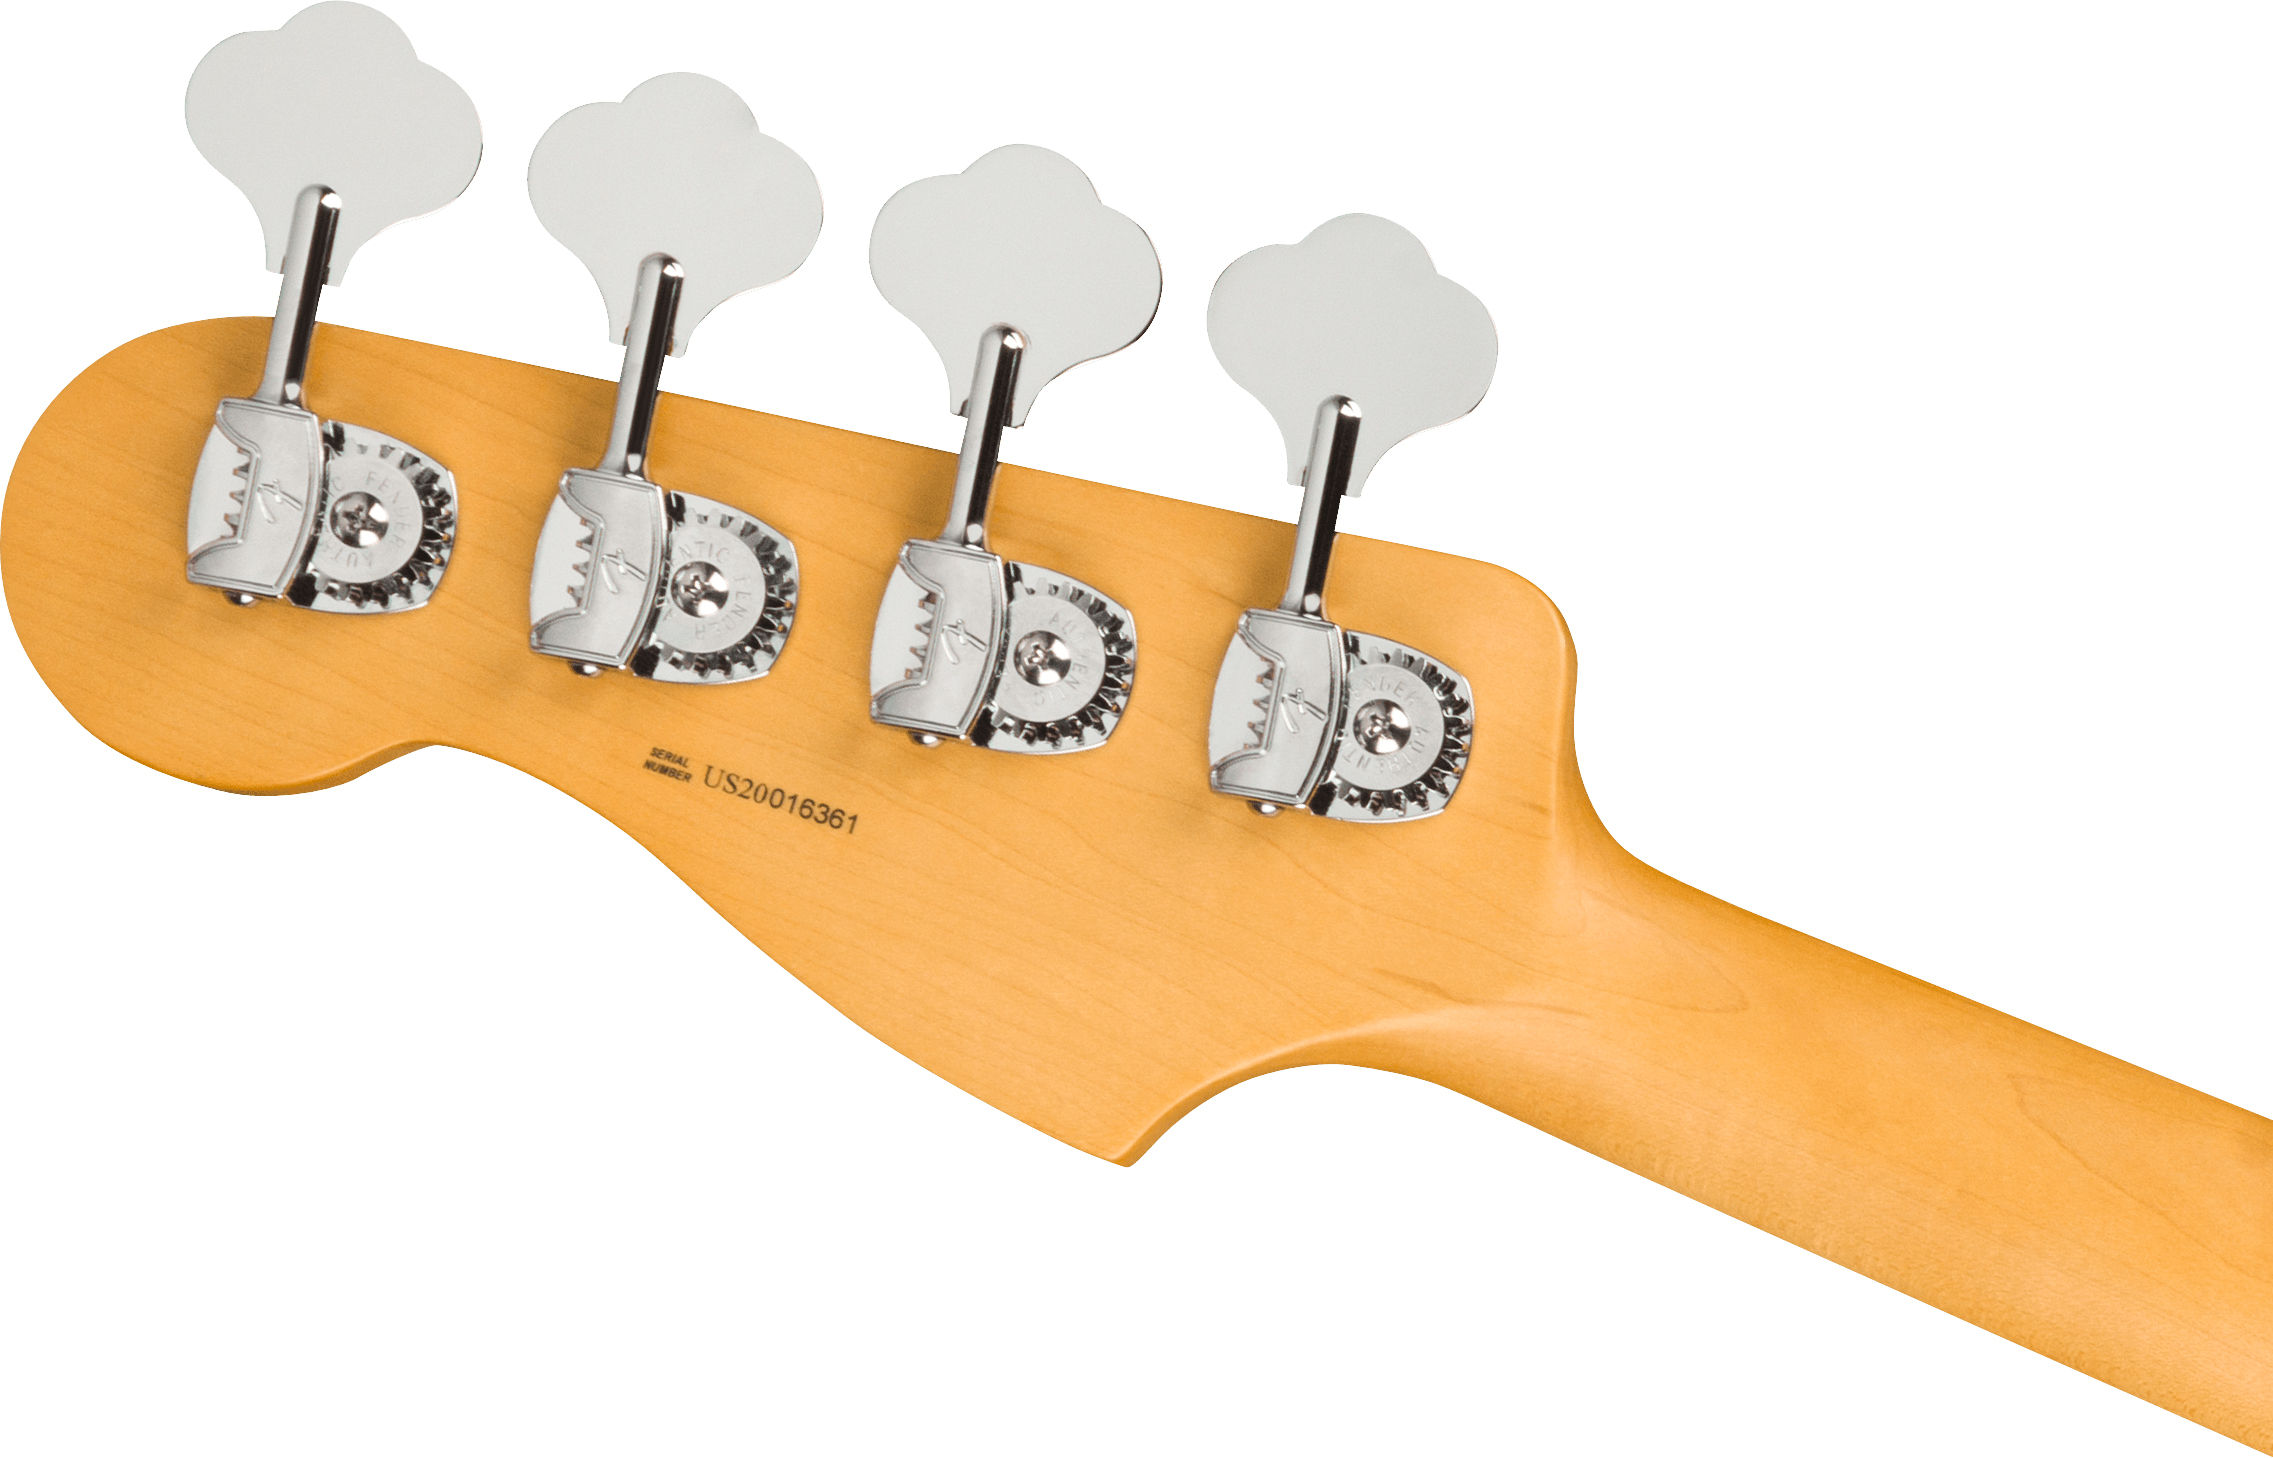 Fender Precision Bass American Professional Ii Usa Rw - Mystic Surf Green - Bajo eléctrico de cuerpo sólido - Variation 3